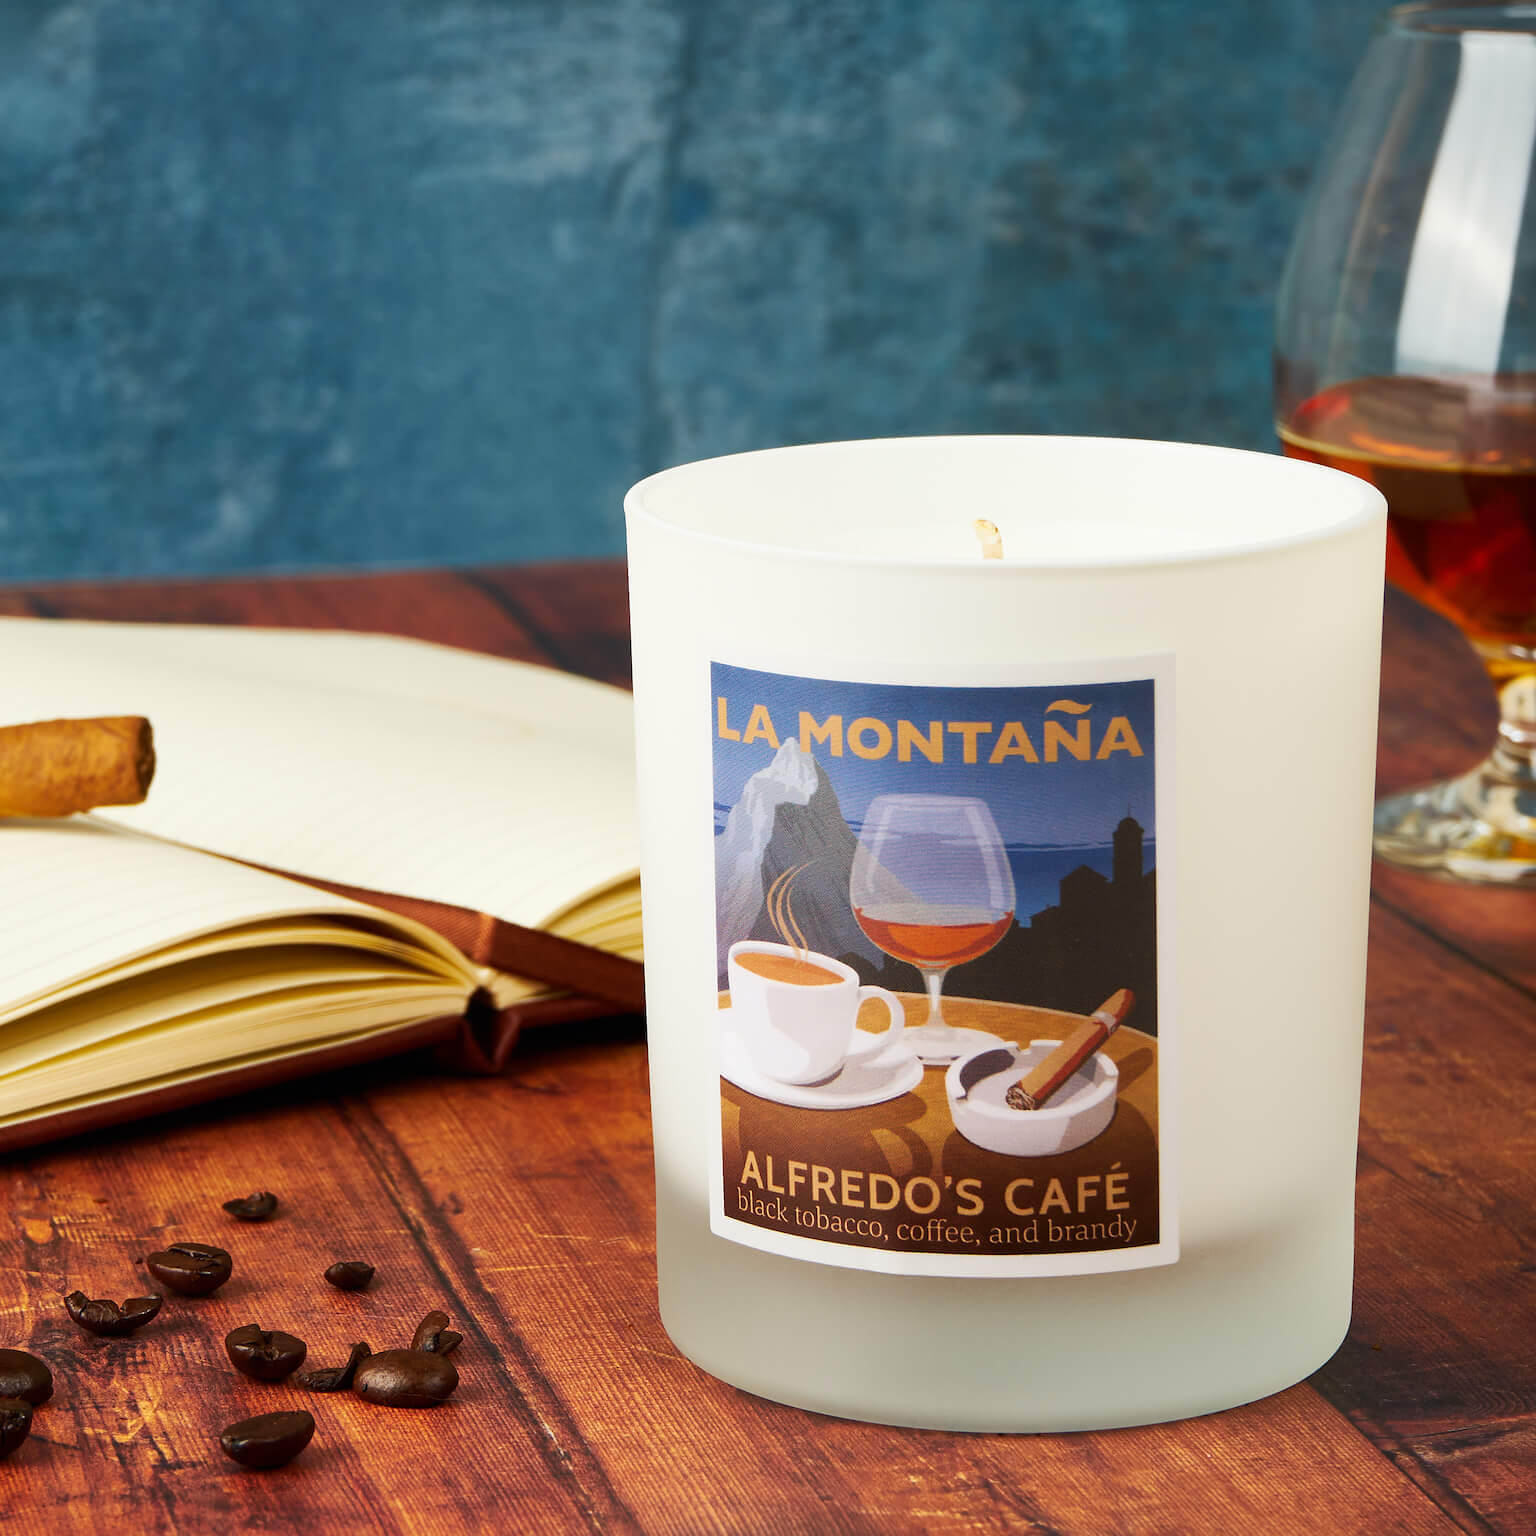 Alfredo's Café Scented Candle by La Montaña